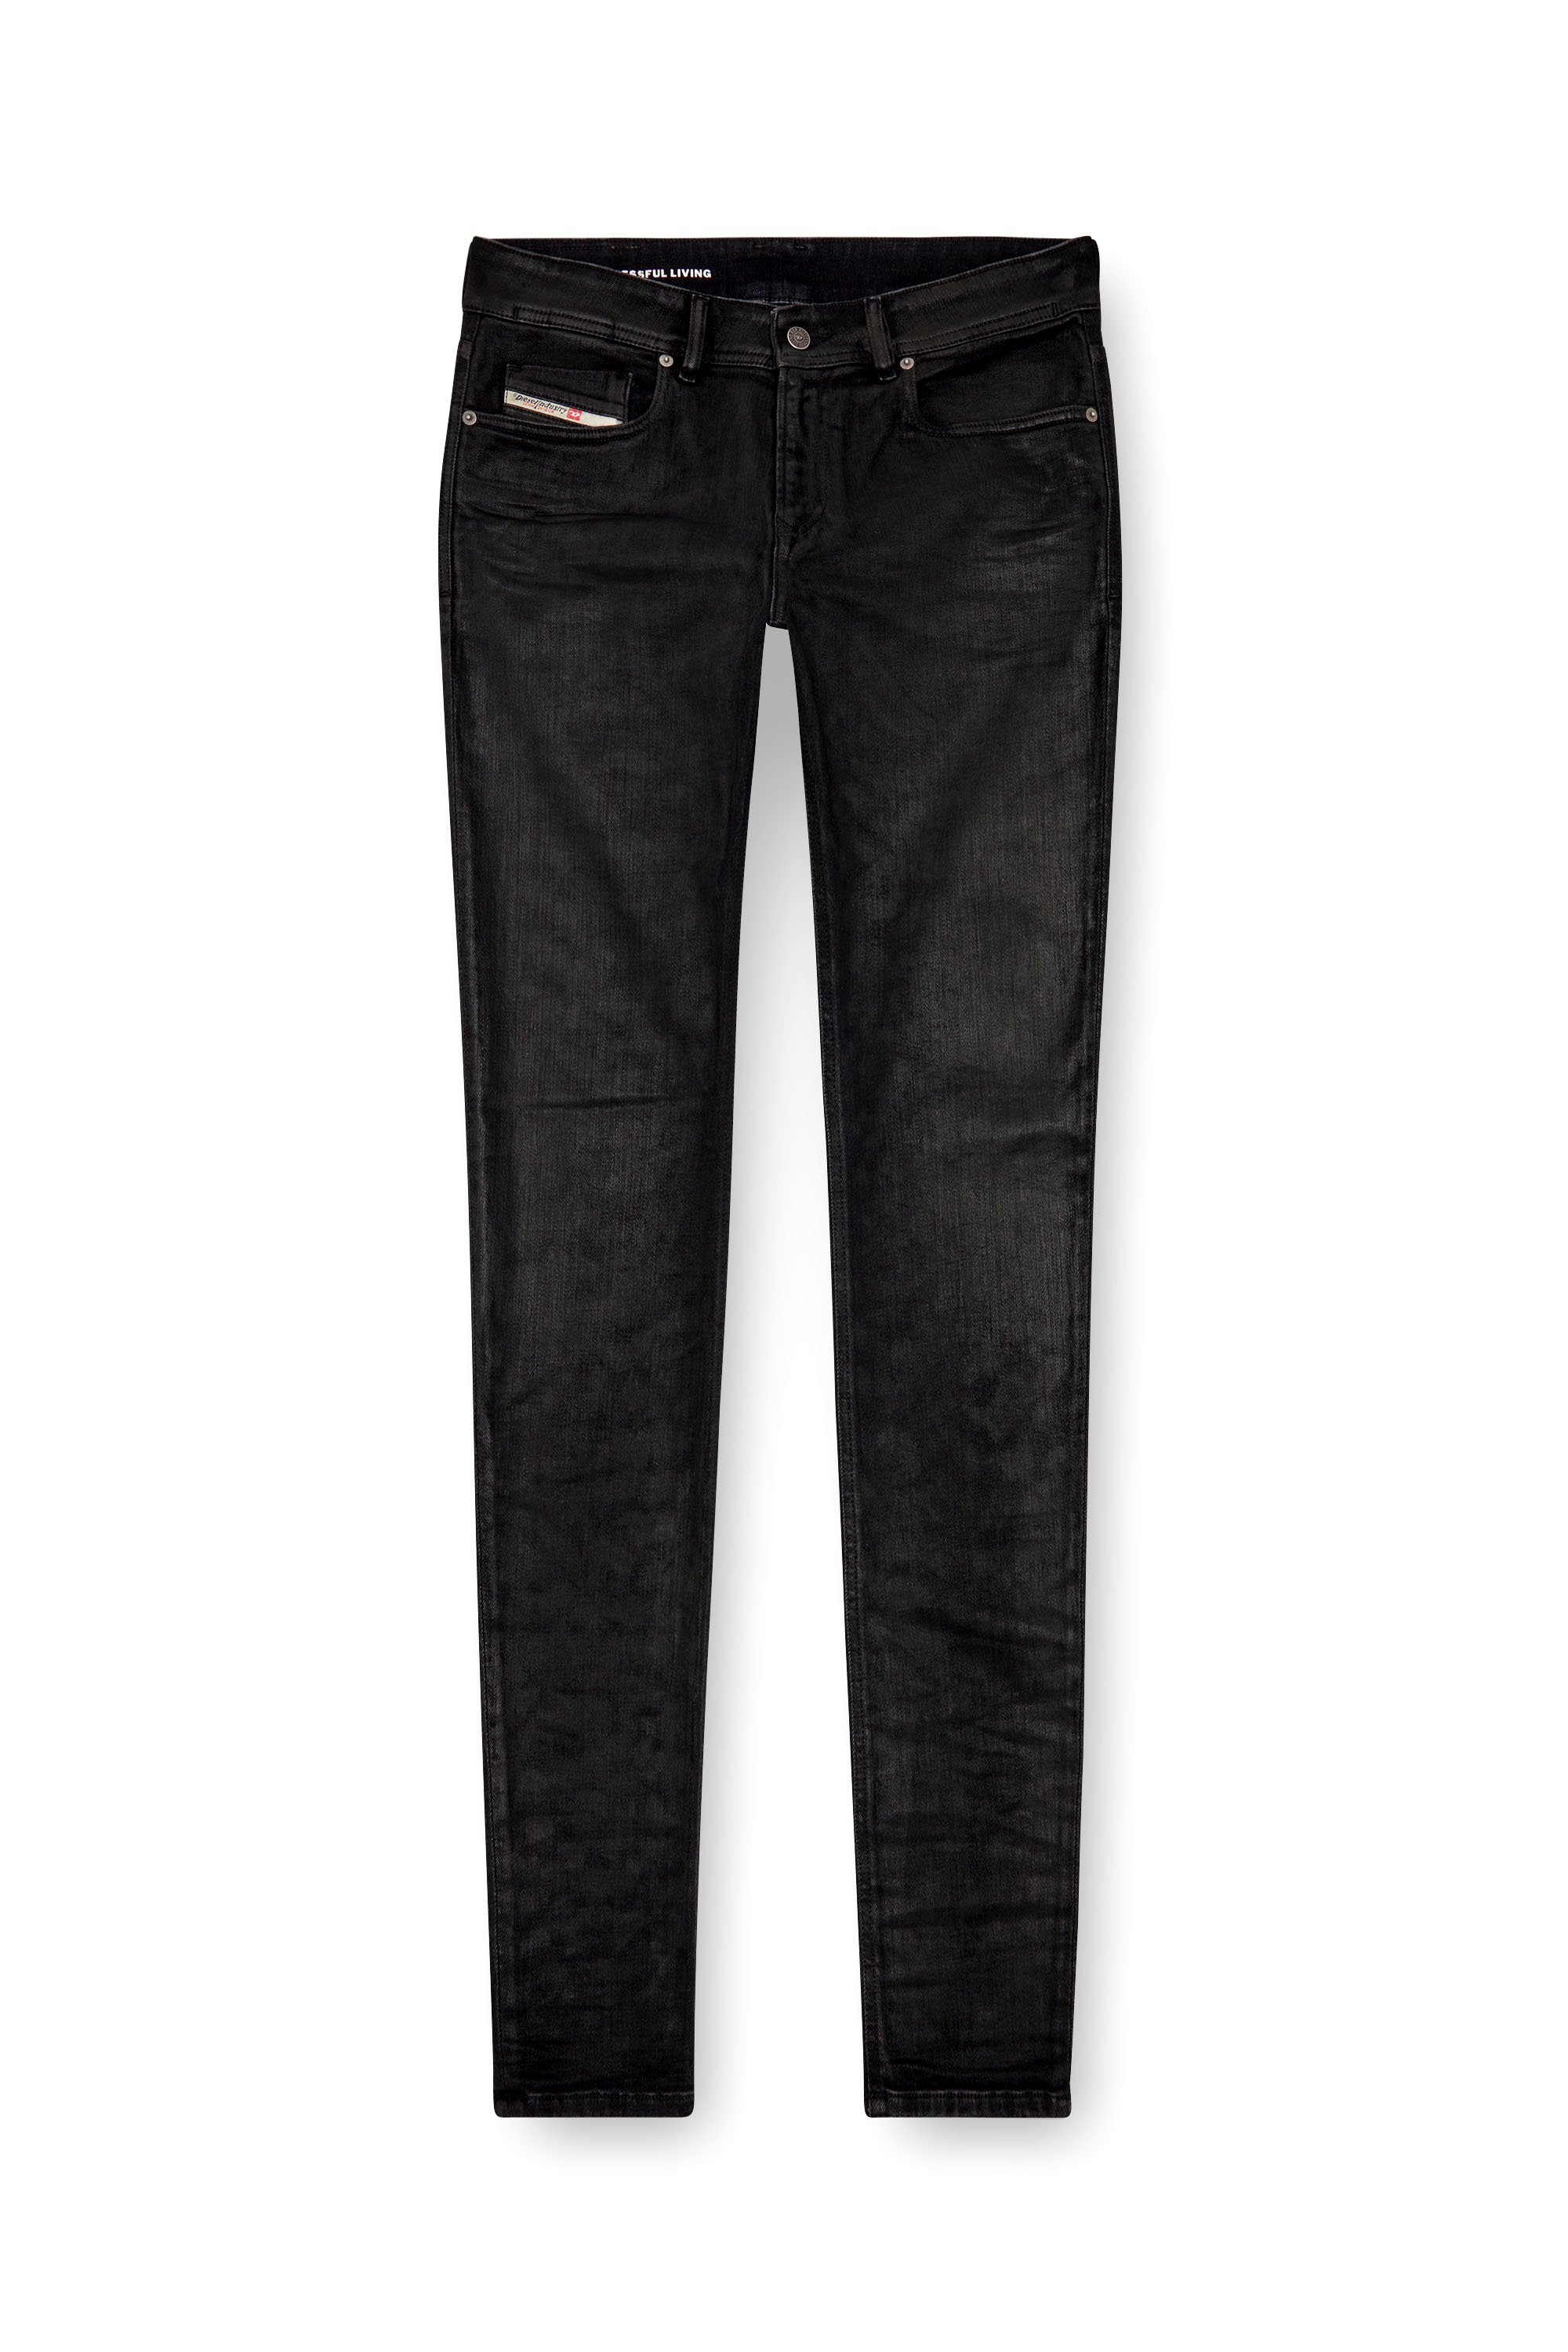 Diesel - Man Skinny Jeans 1979 Sleenker 09J30, Black/Dark grey - Image 5